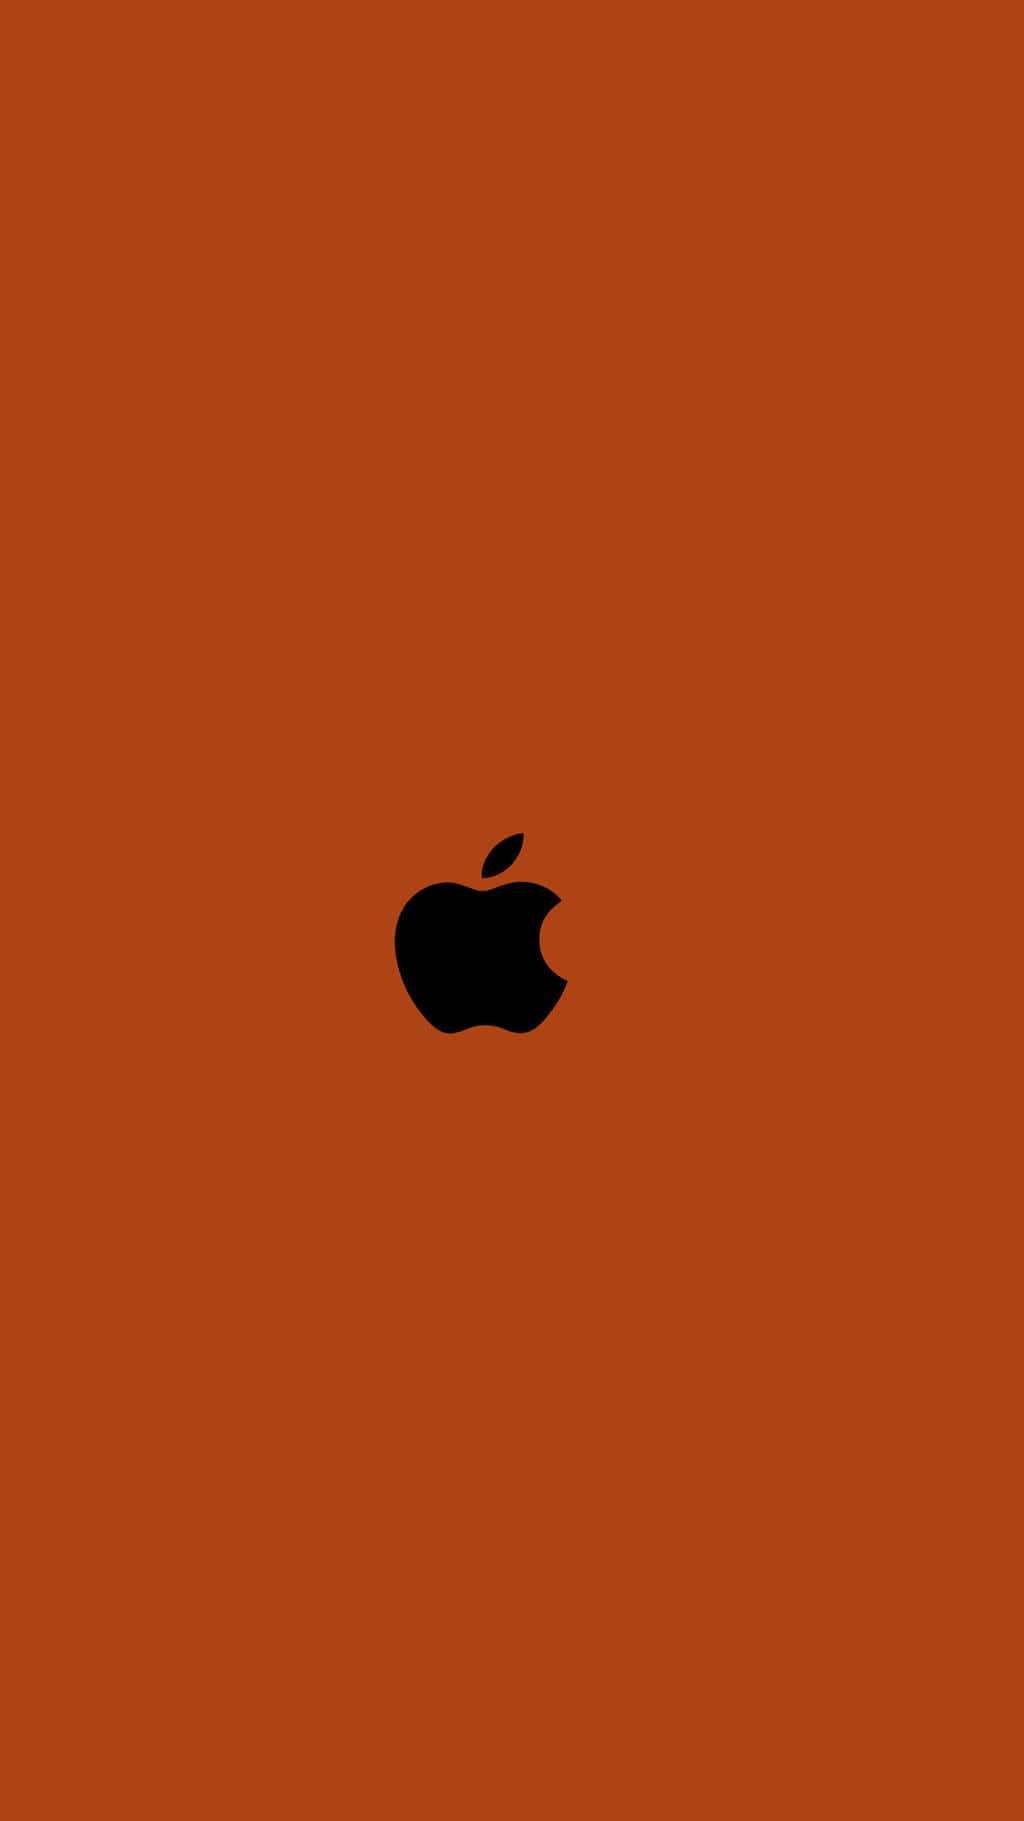 Sfondoarancione Bruciato Con Logo Apple